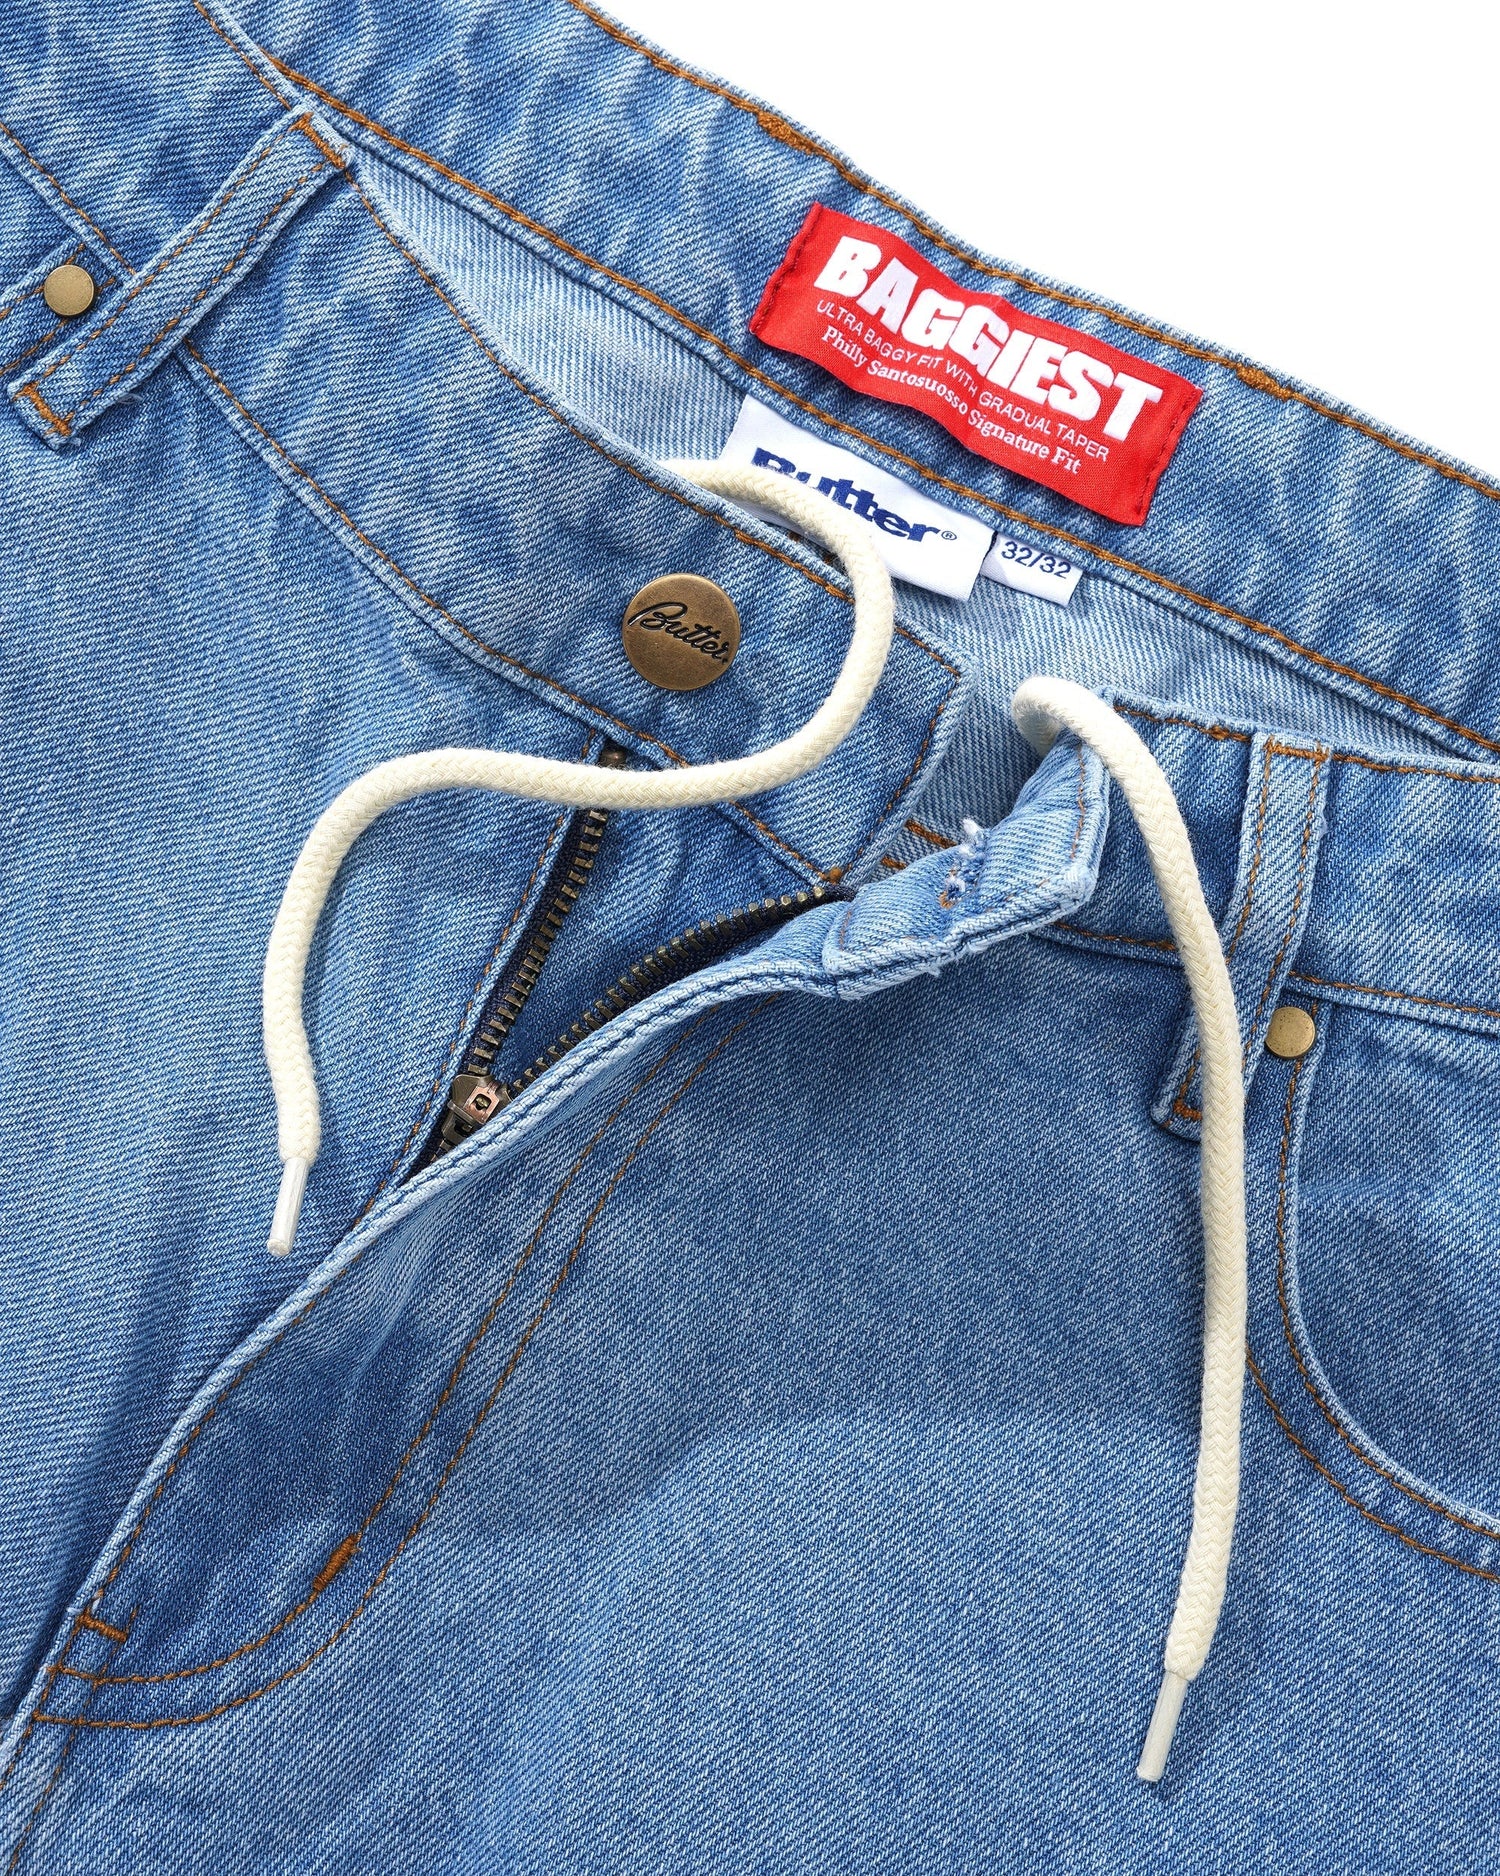 Santosuosso Denim Jeans, Washed Indigo